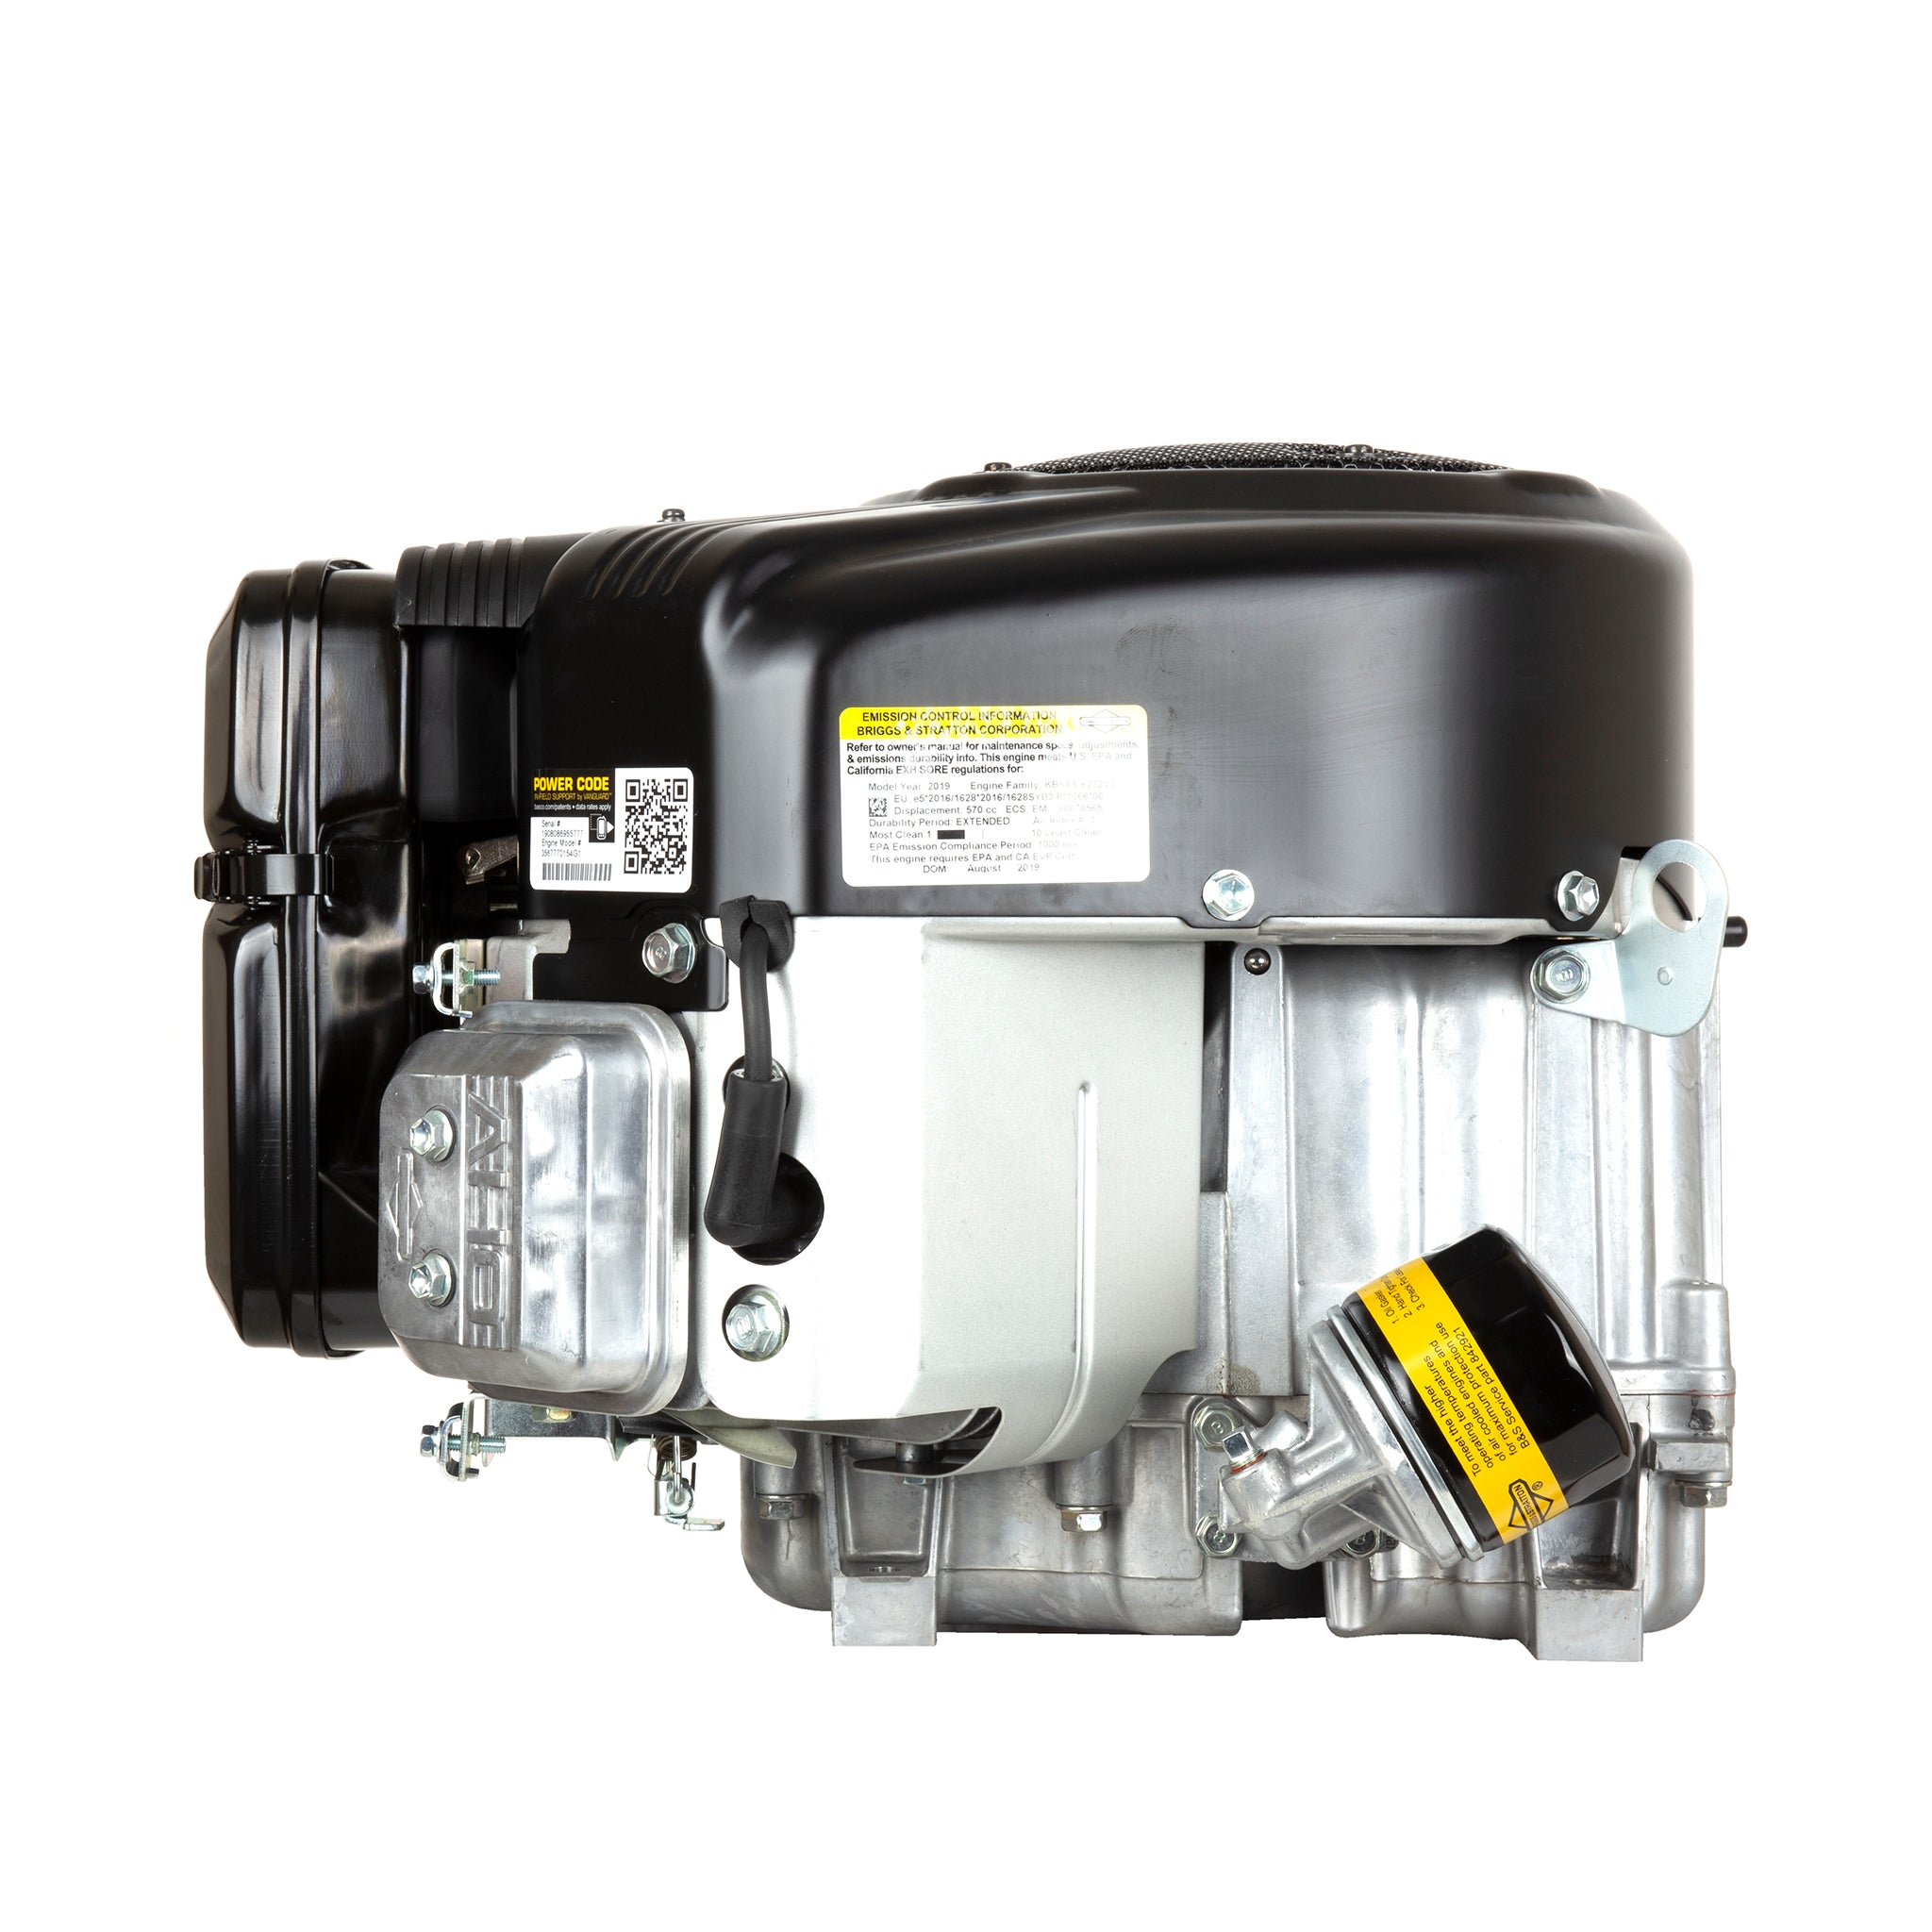 Vanguard® 18.0 Gross HP 570 CC Vertical Shaft Engine